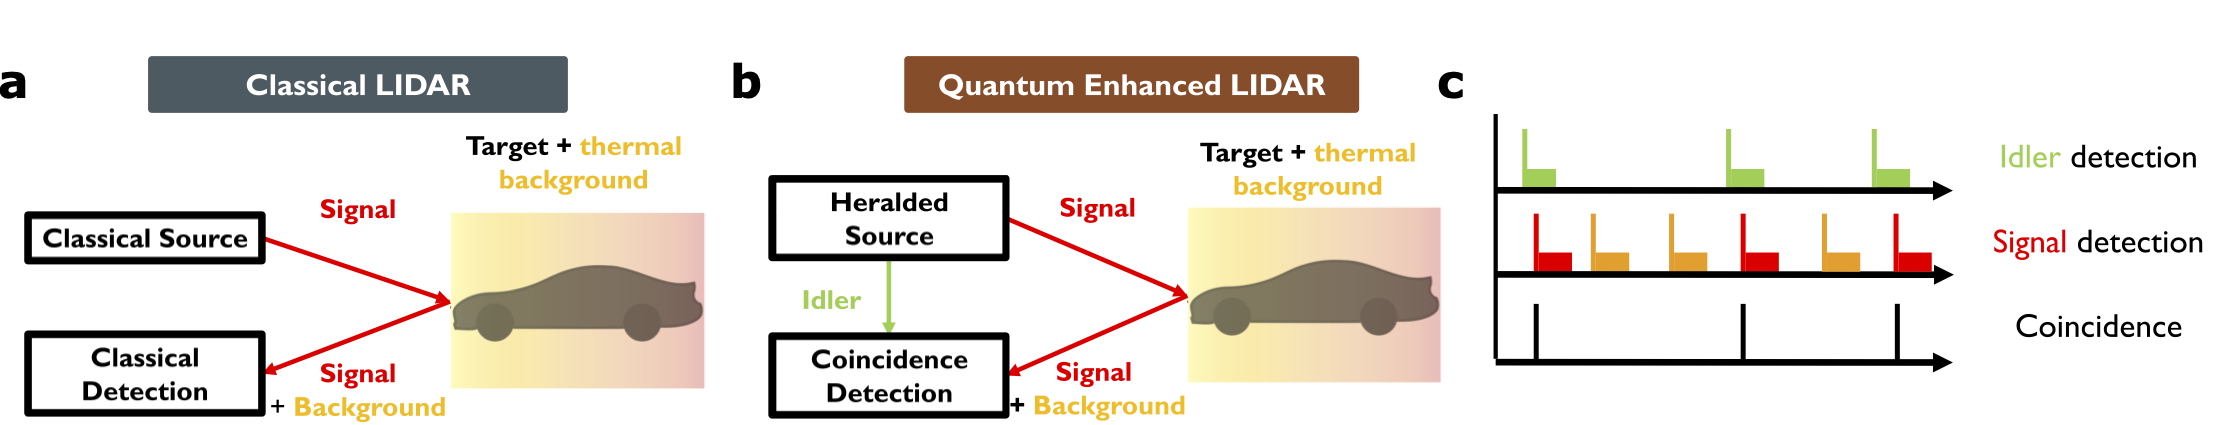 Schematic of Quantum Enhanced LIDAR